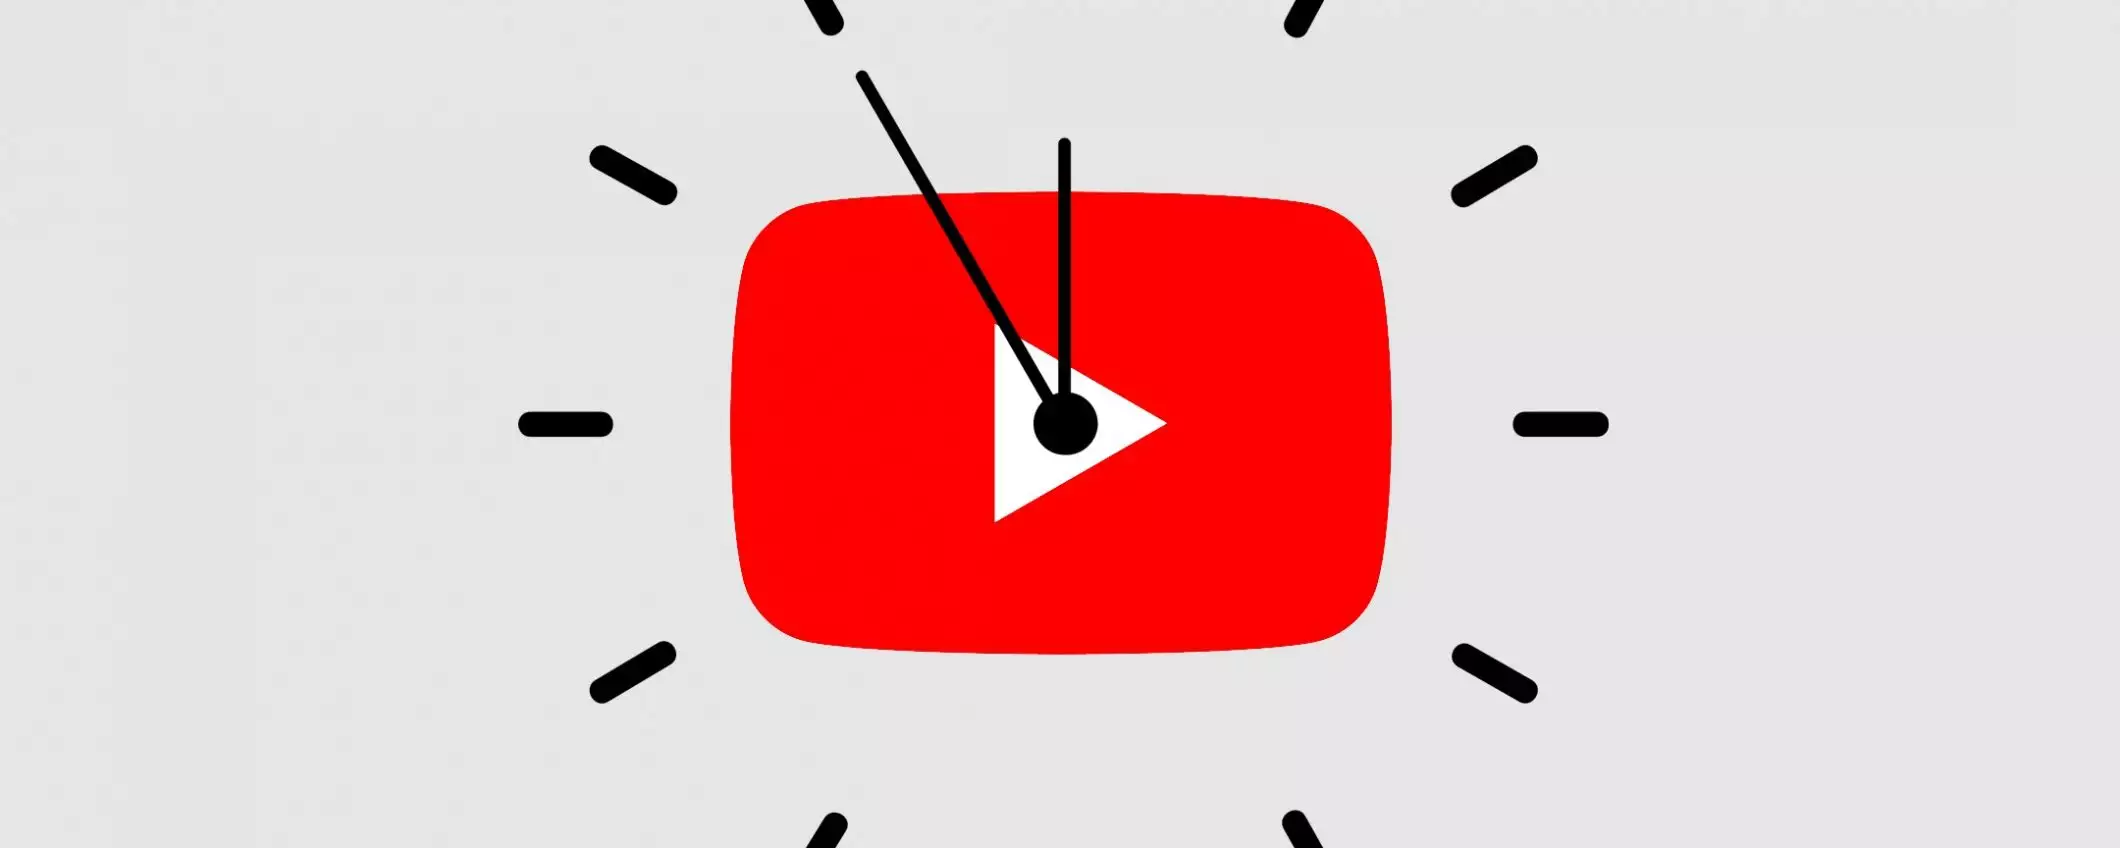 Quanto tempo passi su YouTube? Decidilo tu